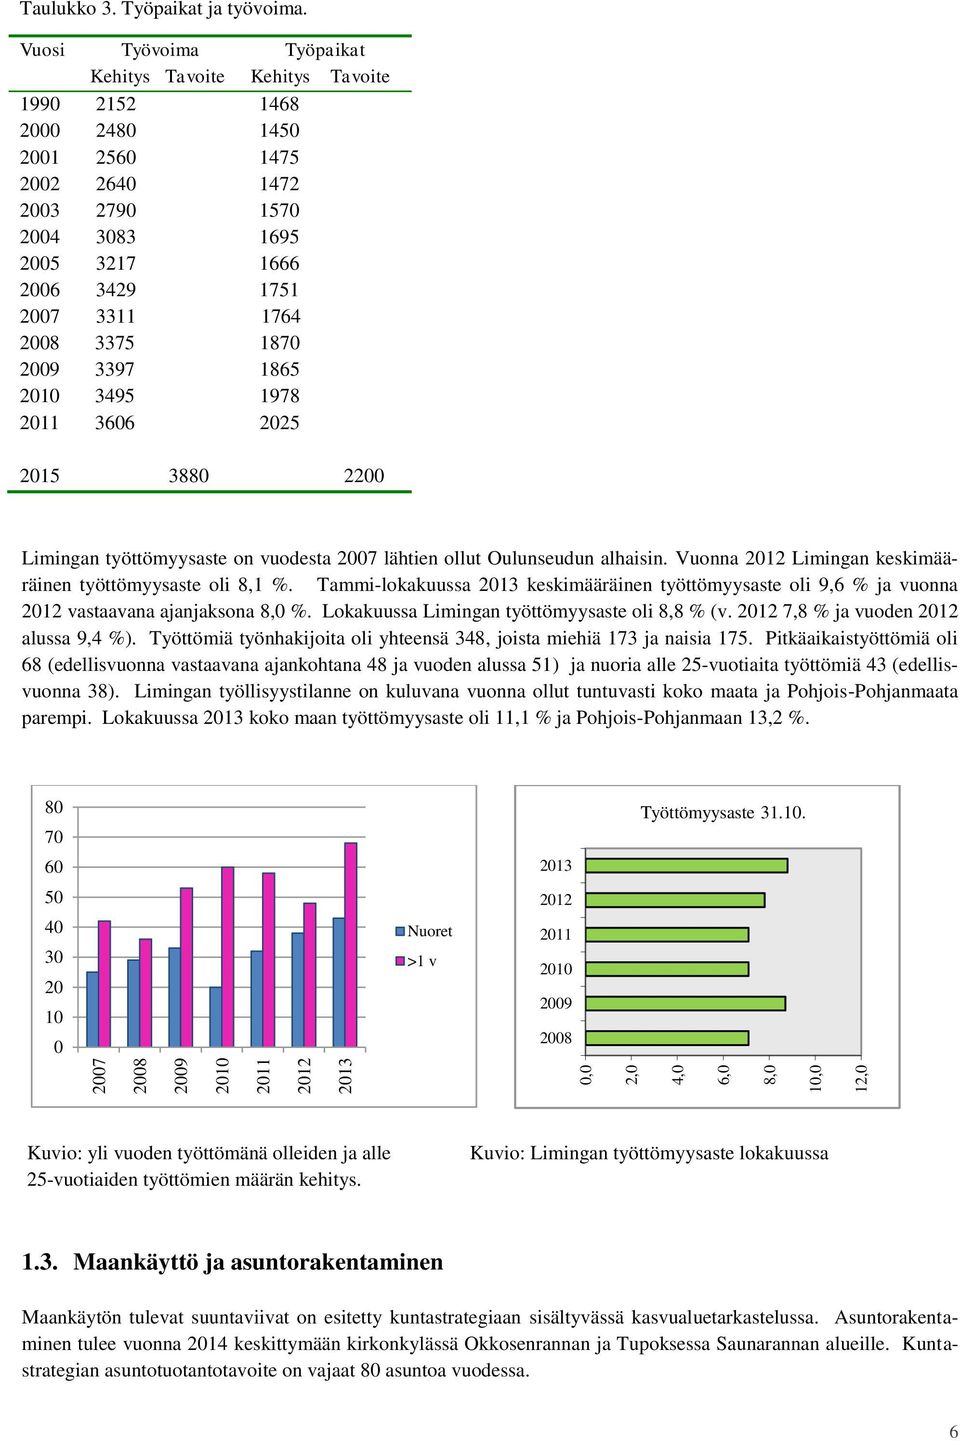 3375 1870 2009 3397 1865 2010 3495 1978 2011 3606 2025 2015 3880 2200 Limingan työttömyysaste on vuodesta 2007 lähtien ollut Oulunseudun alhaisin.